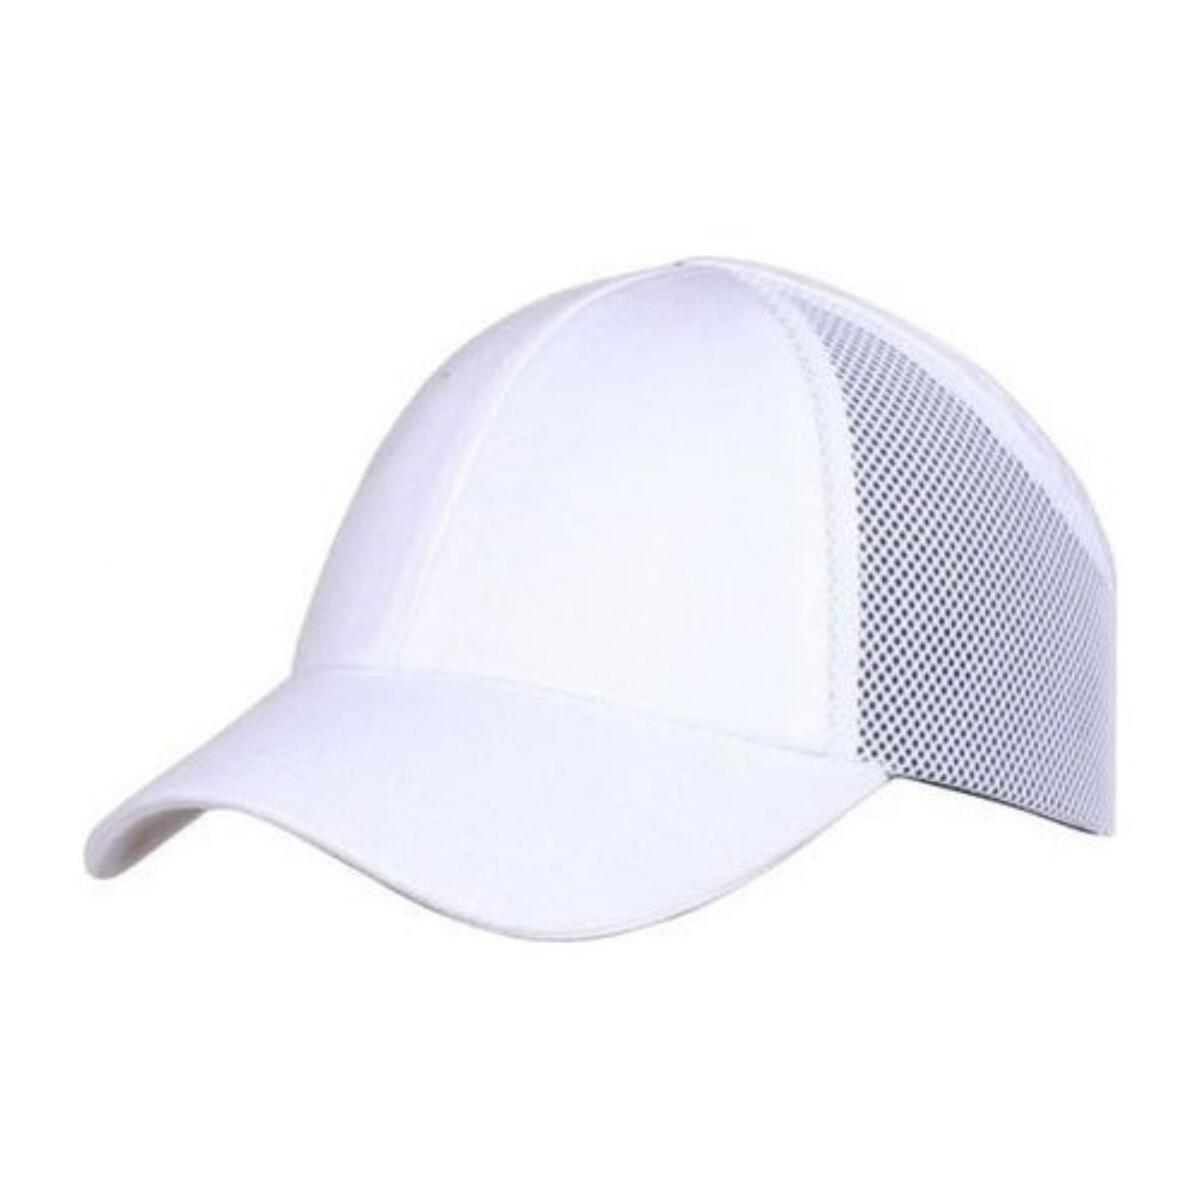 Iş Güvenliği Koruyucu Darbe Emici Top Kep Şapka Baret Beyaz